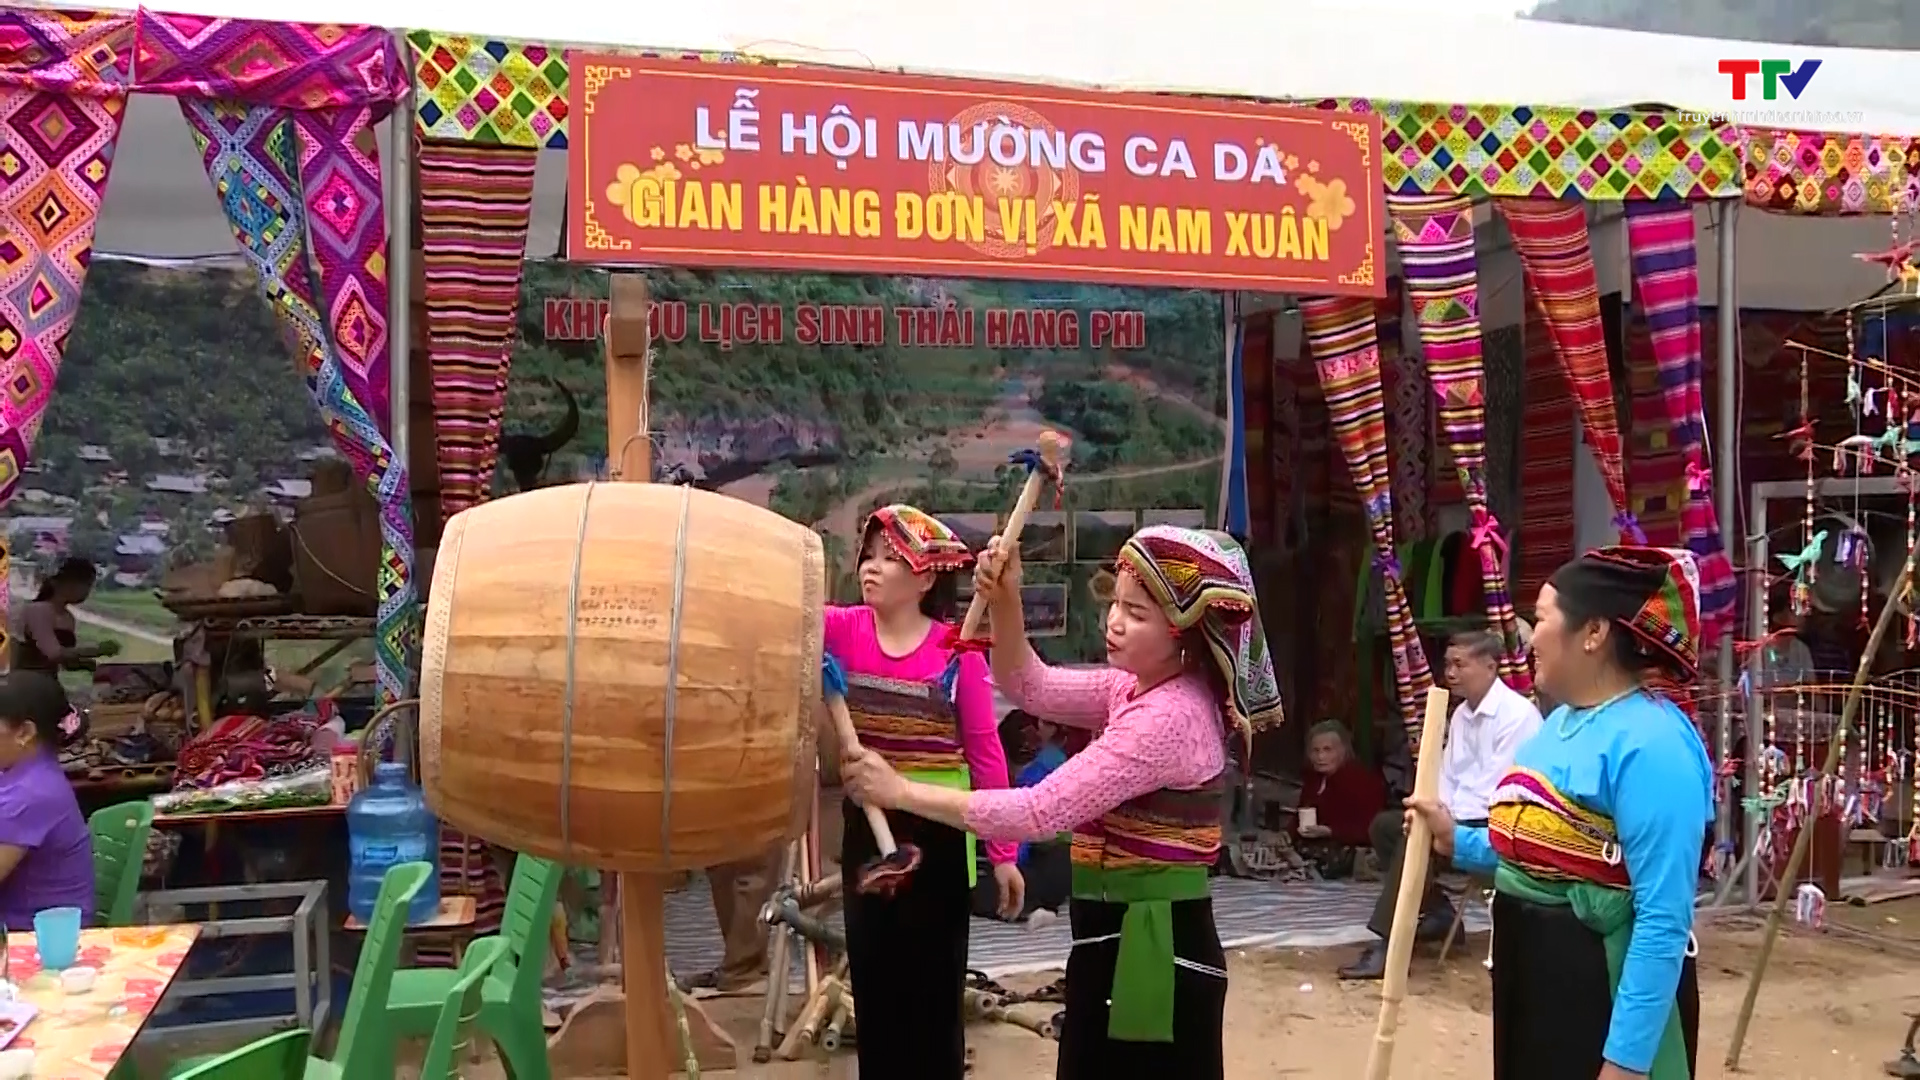 Văn hóa truyền thống – Sản phẩm du lịch bền vững ở miền núi Thanh Hóa - Ảnh 7.